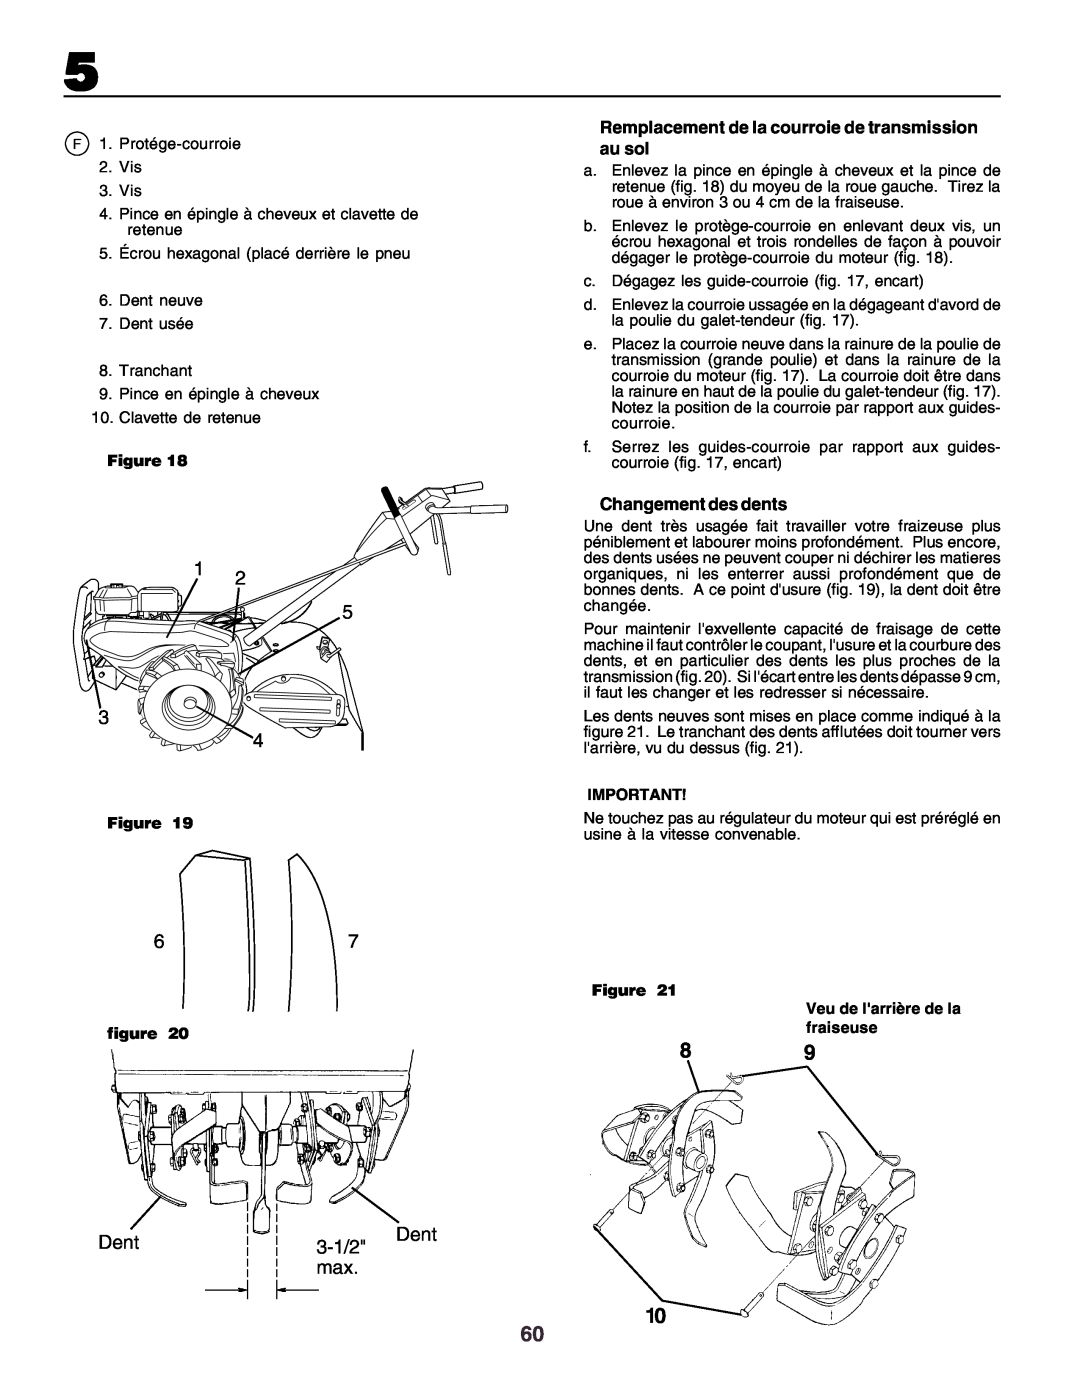 Husqvarna crt51 instruction manual Dent, 3-1/2, Figure Veu de larrière de la fraiseuse 